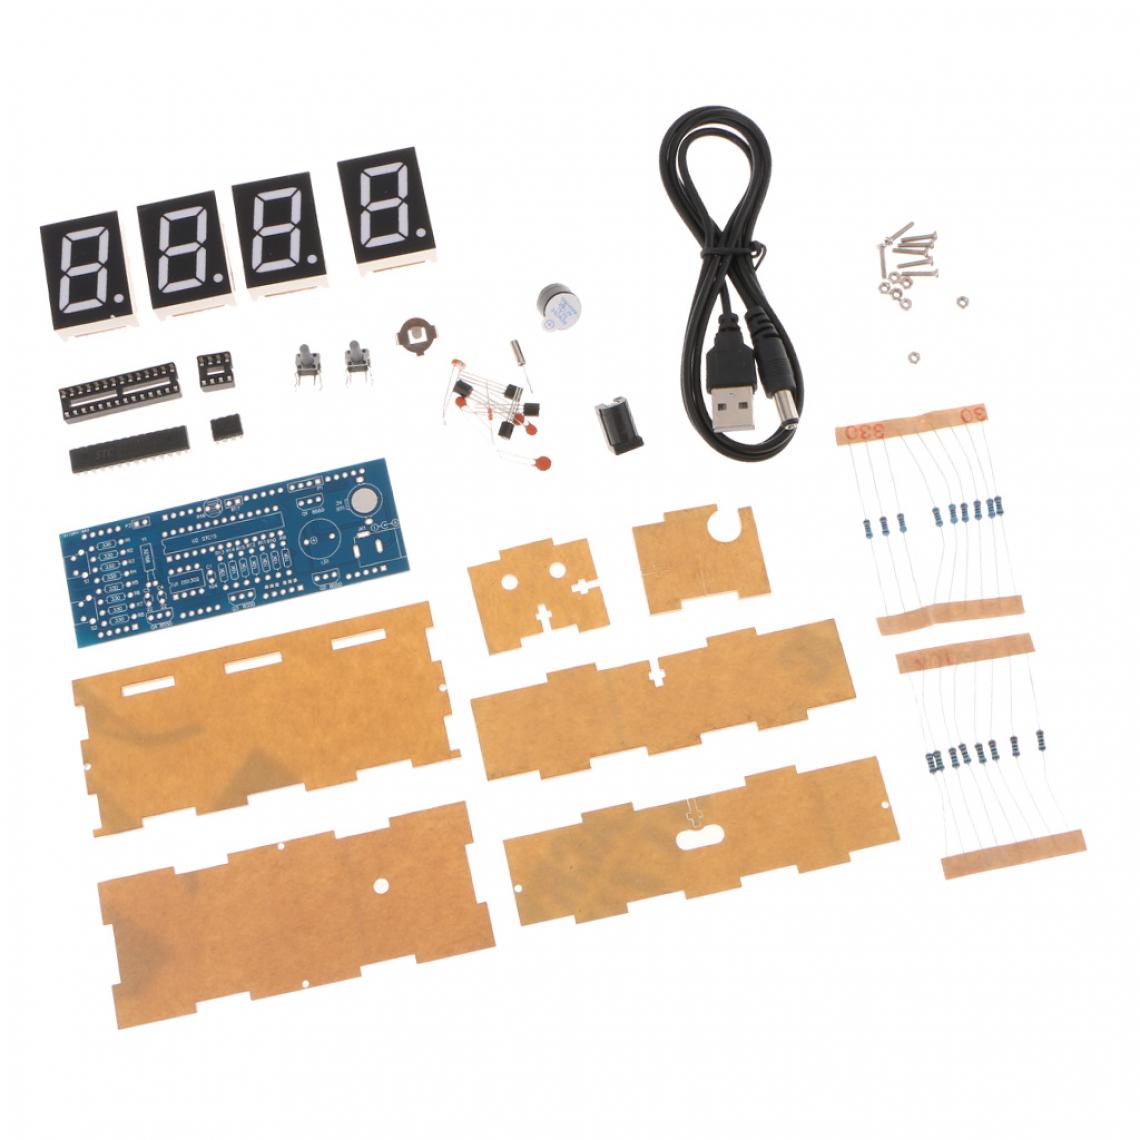 marque generique - Kit d'horloge LED numérique DIY à 4 chiffres Contrôle de la lumière Affichage de l'heure et de la date, blanc - Ampli